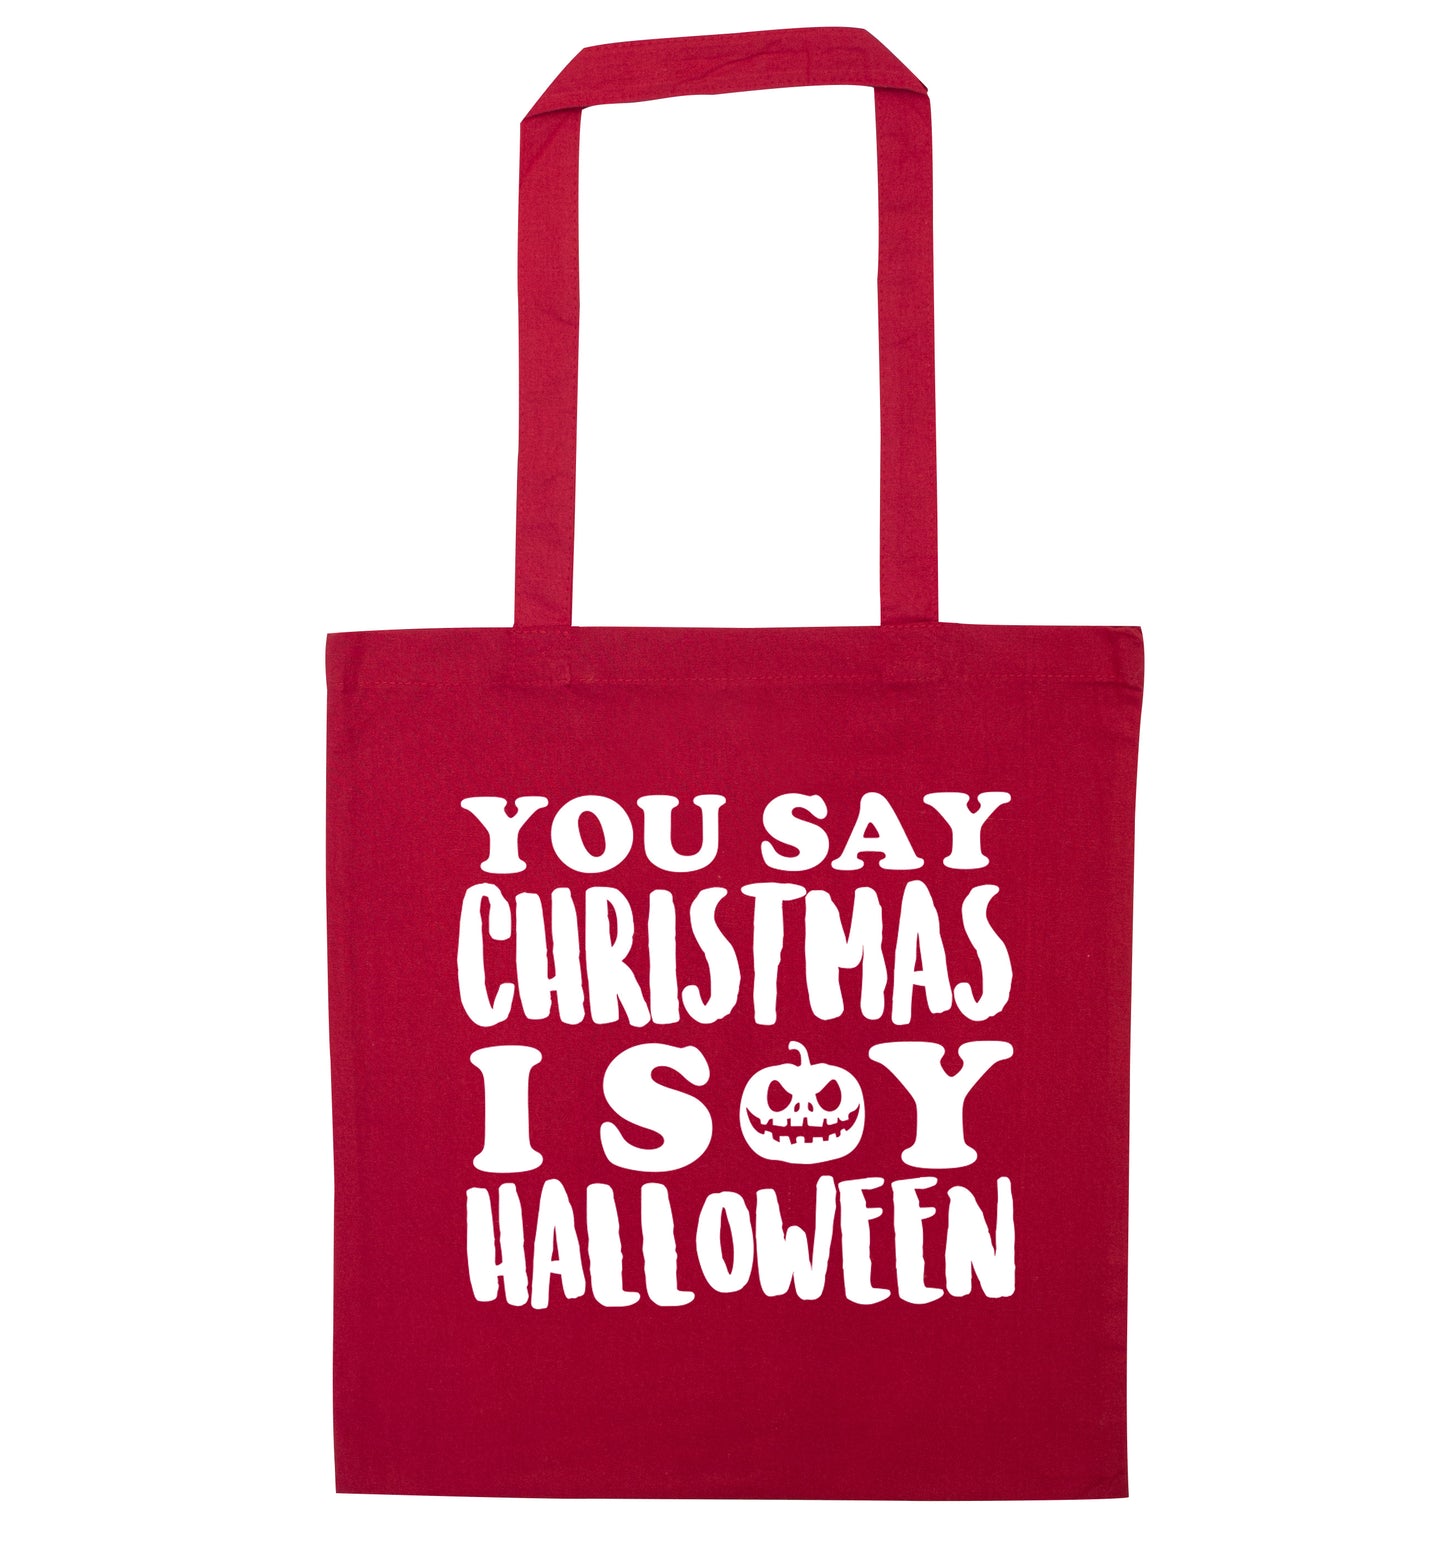 You say christmas I say halloween! red tote bag